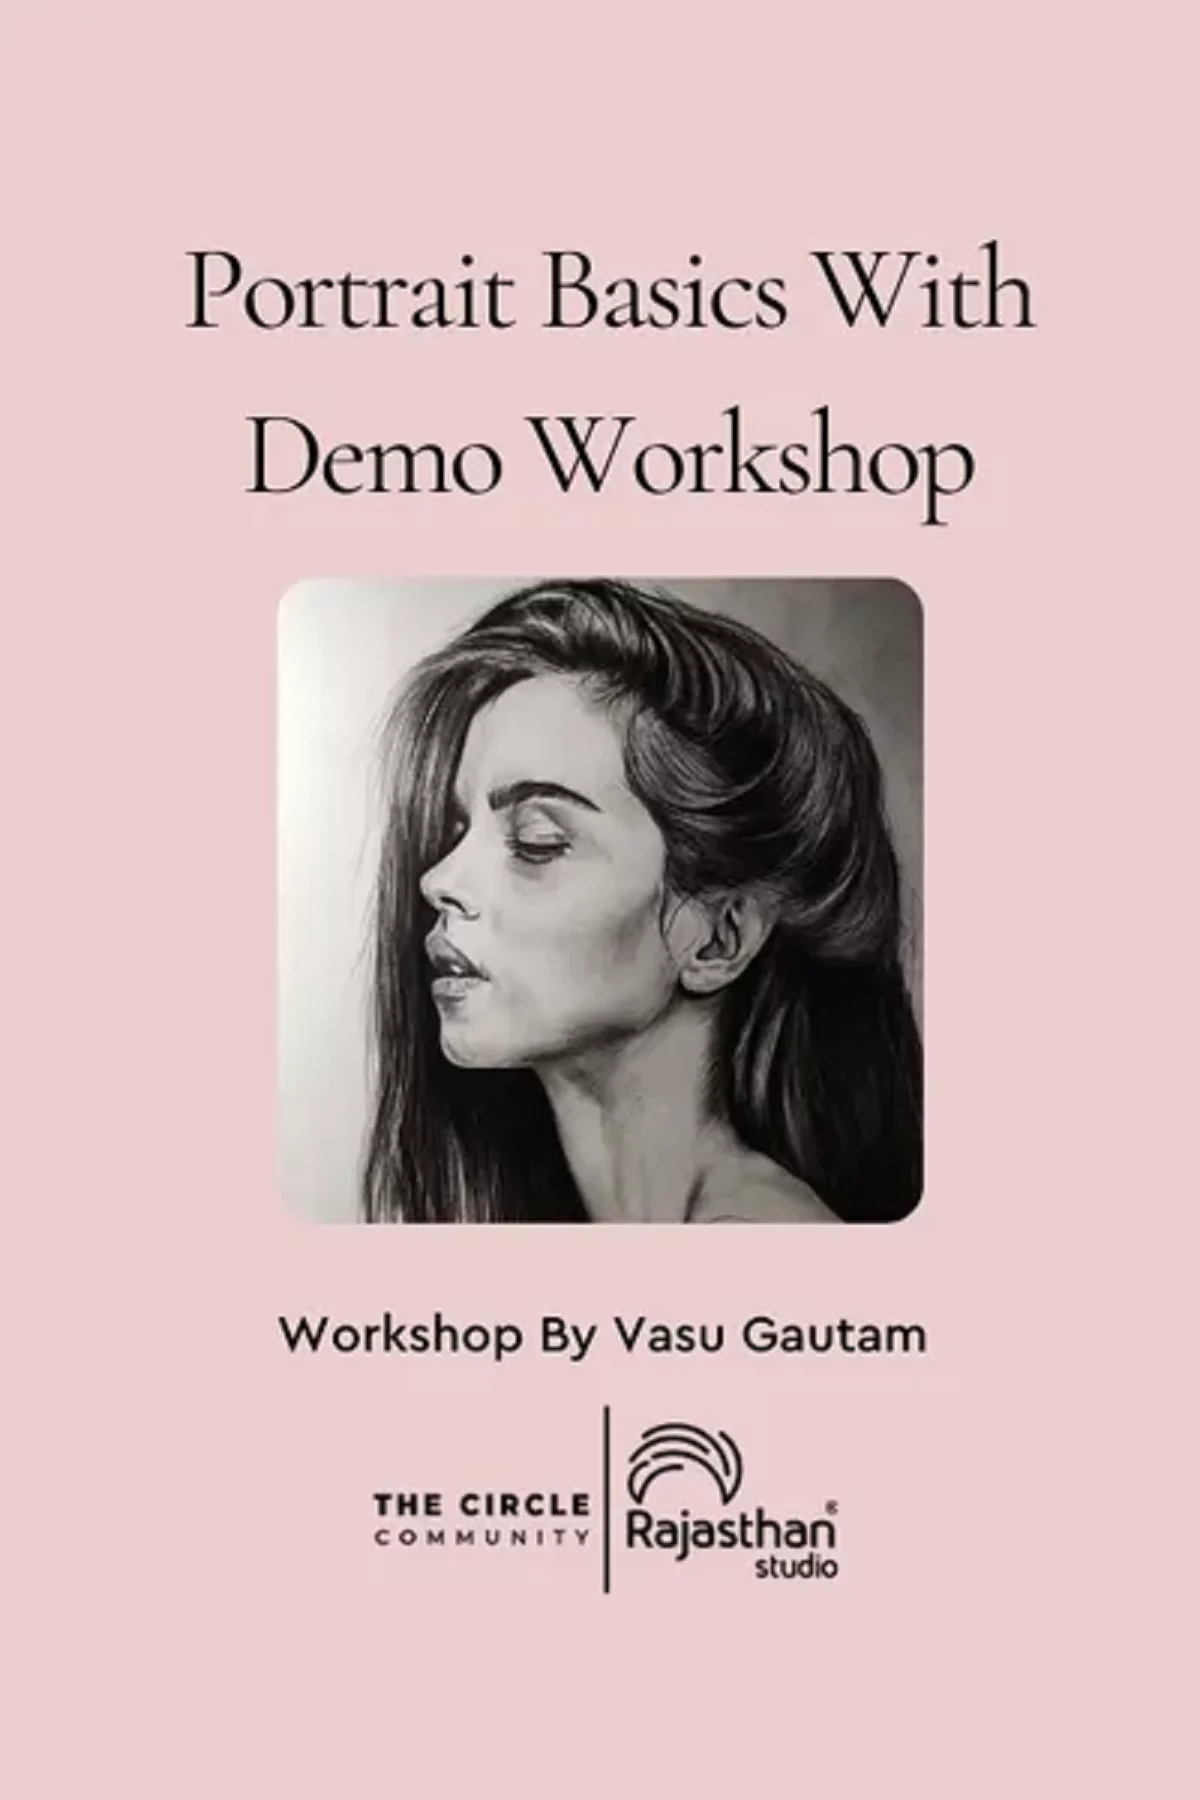 Portrait Basics With Demo Workshop with Vasu Gautam